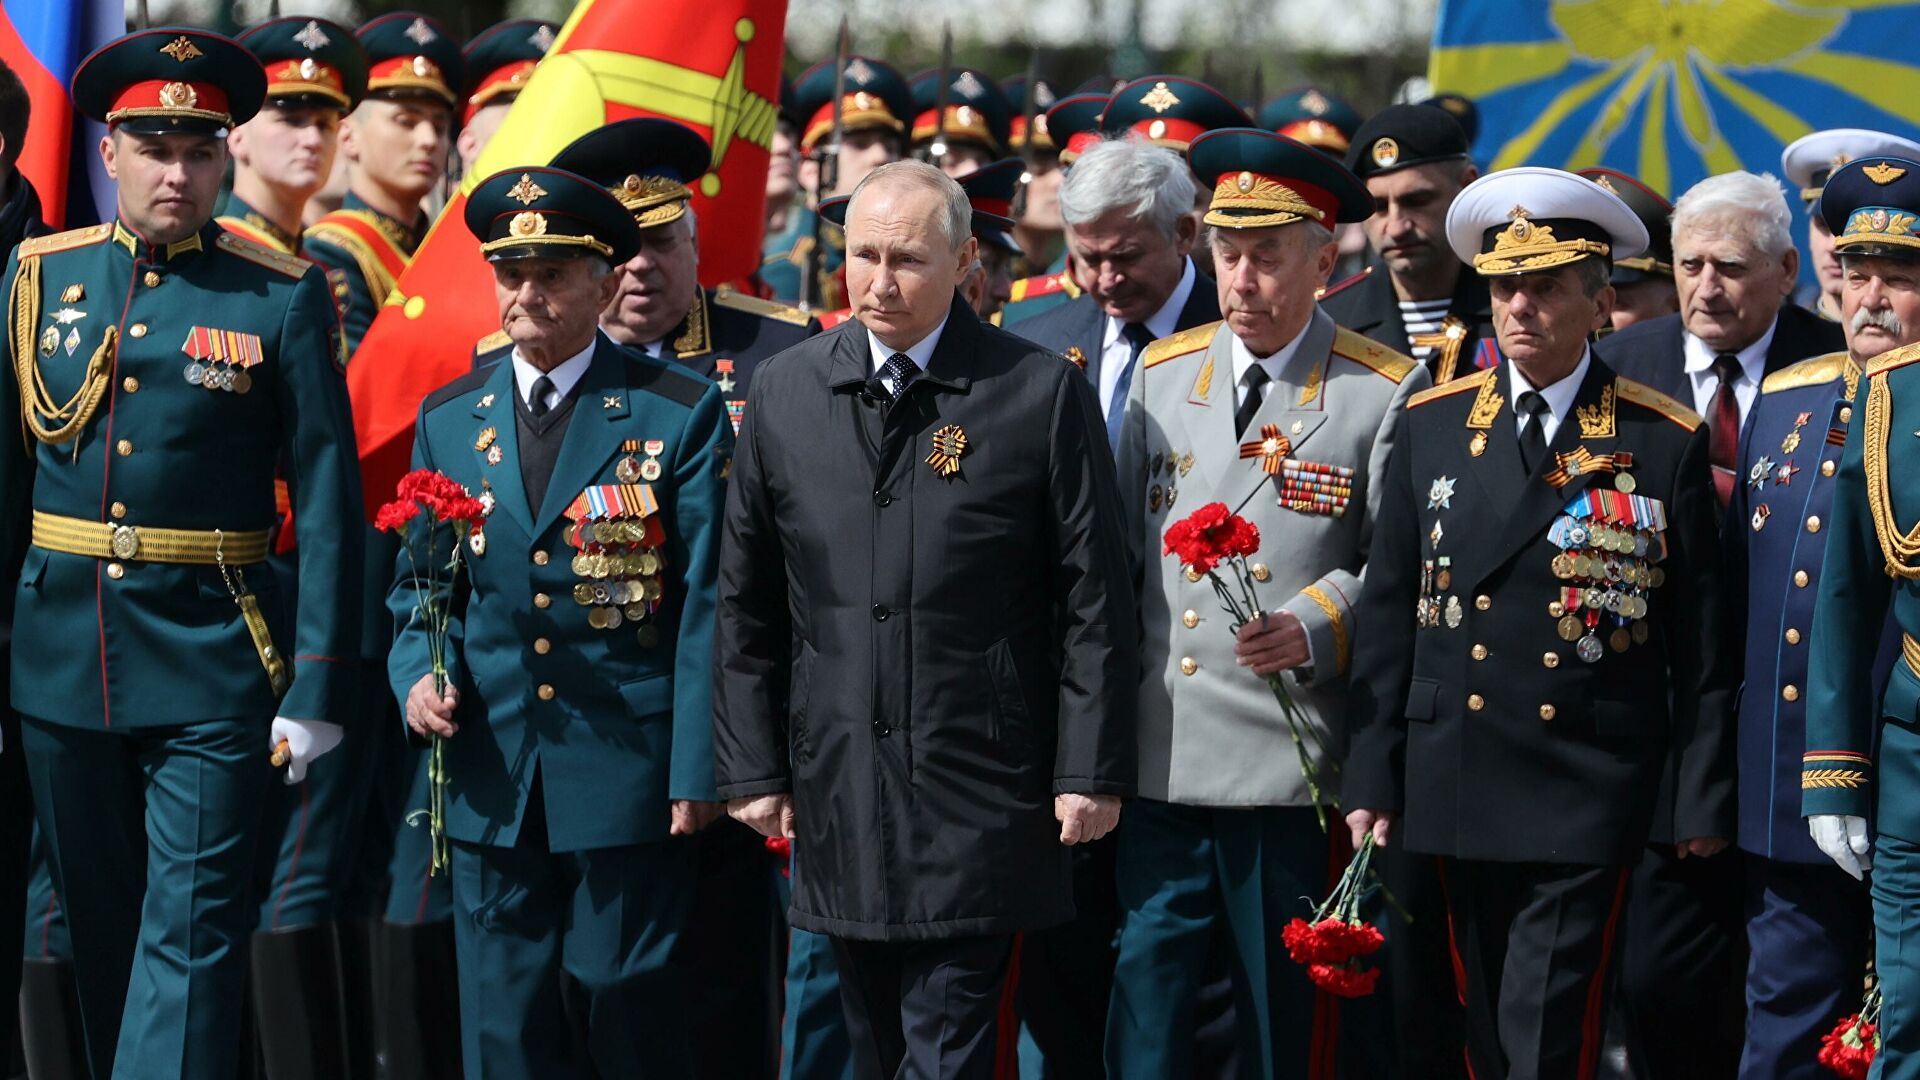 Психолог проаналізував поведінку Путіна на параді й виділив ряд особливостей